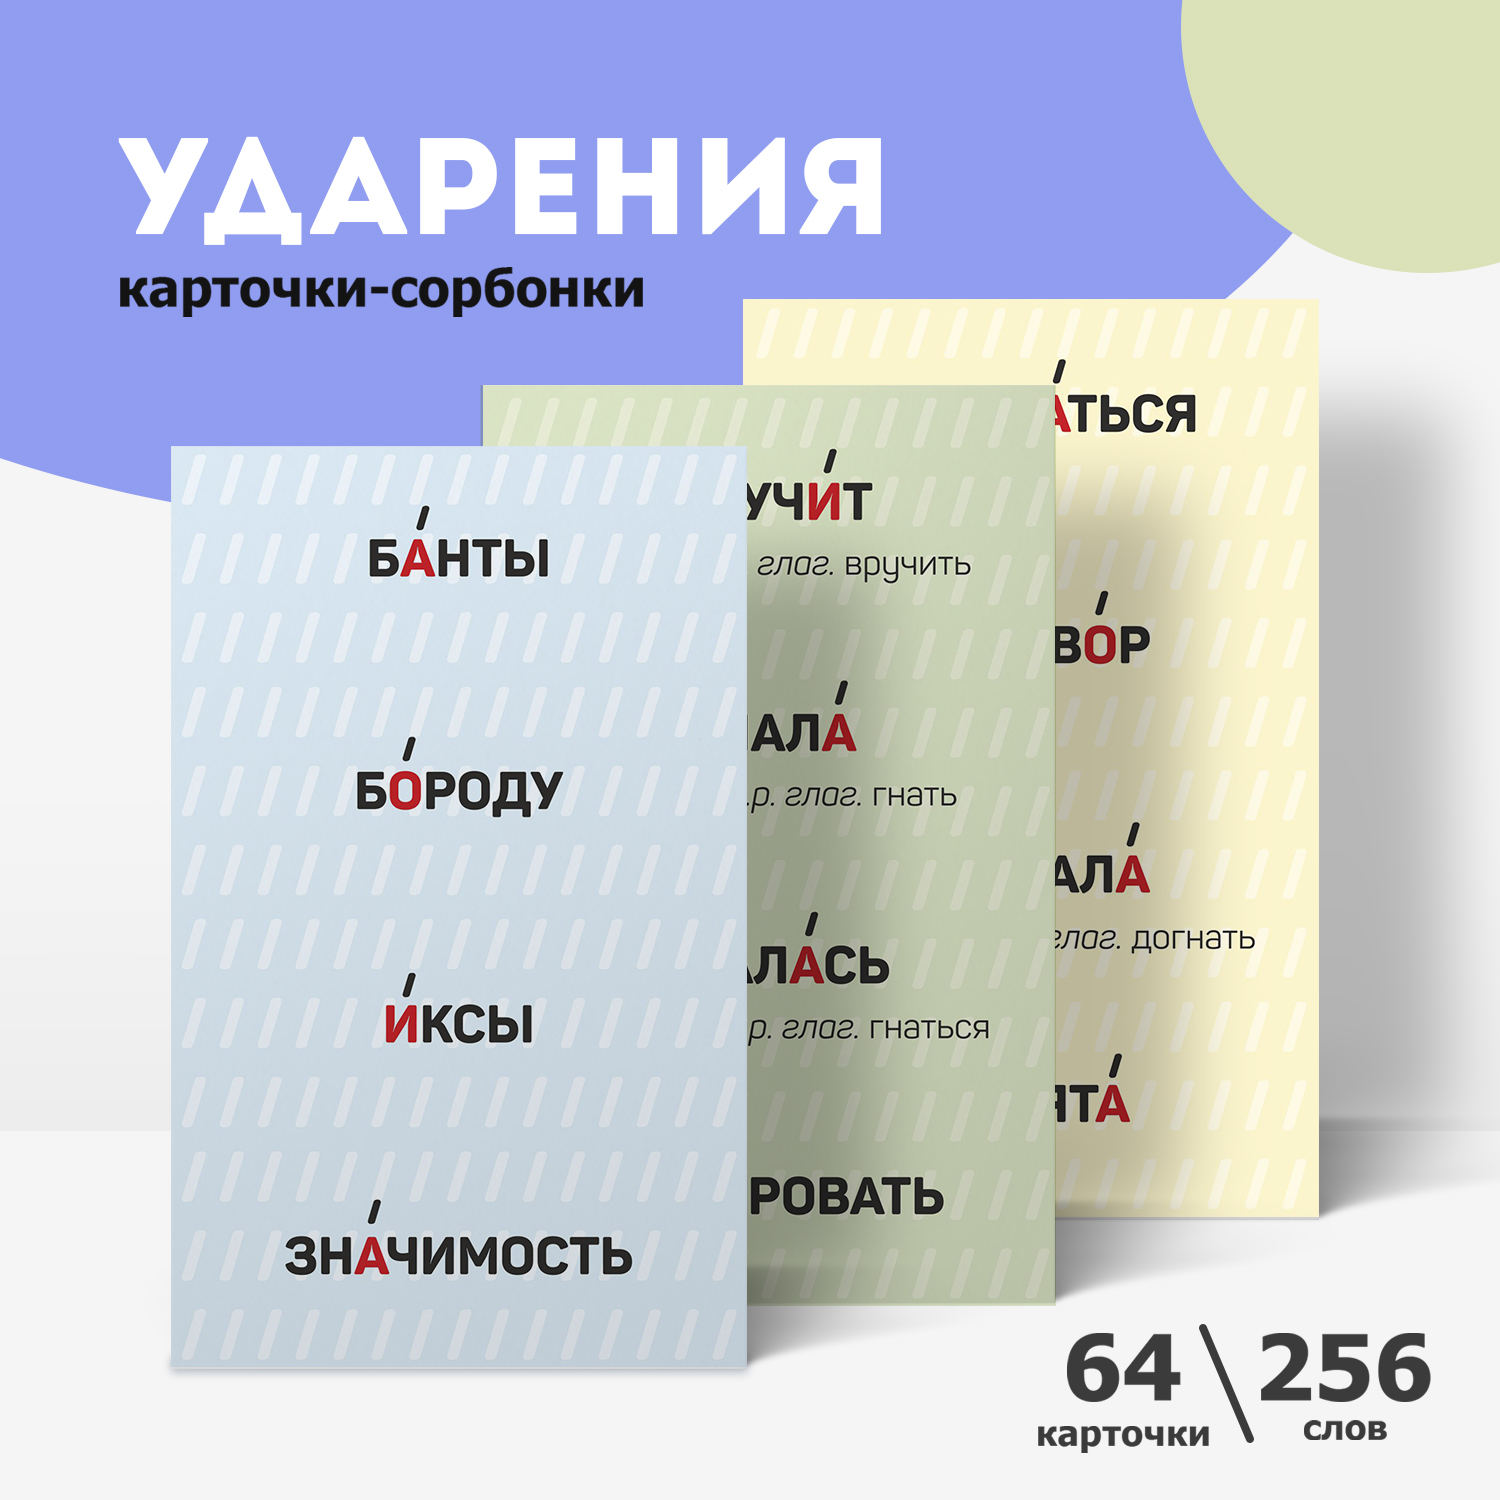 Обучающие карточки Выручалкин Карточки-сорбонки Русский язык. Ударения, 64 шт, 256 слов асборн карточки игры для всей семьи